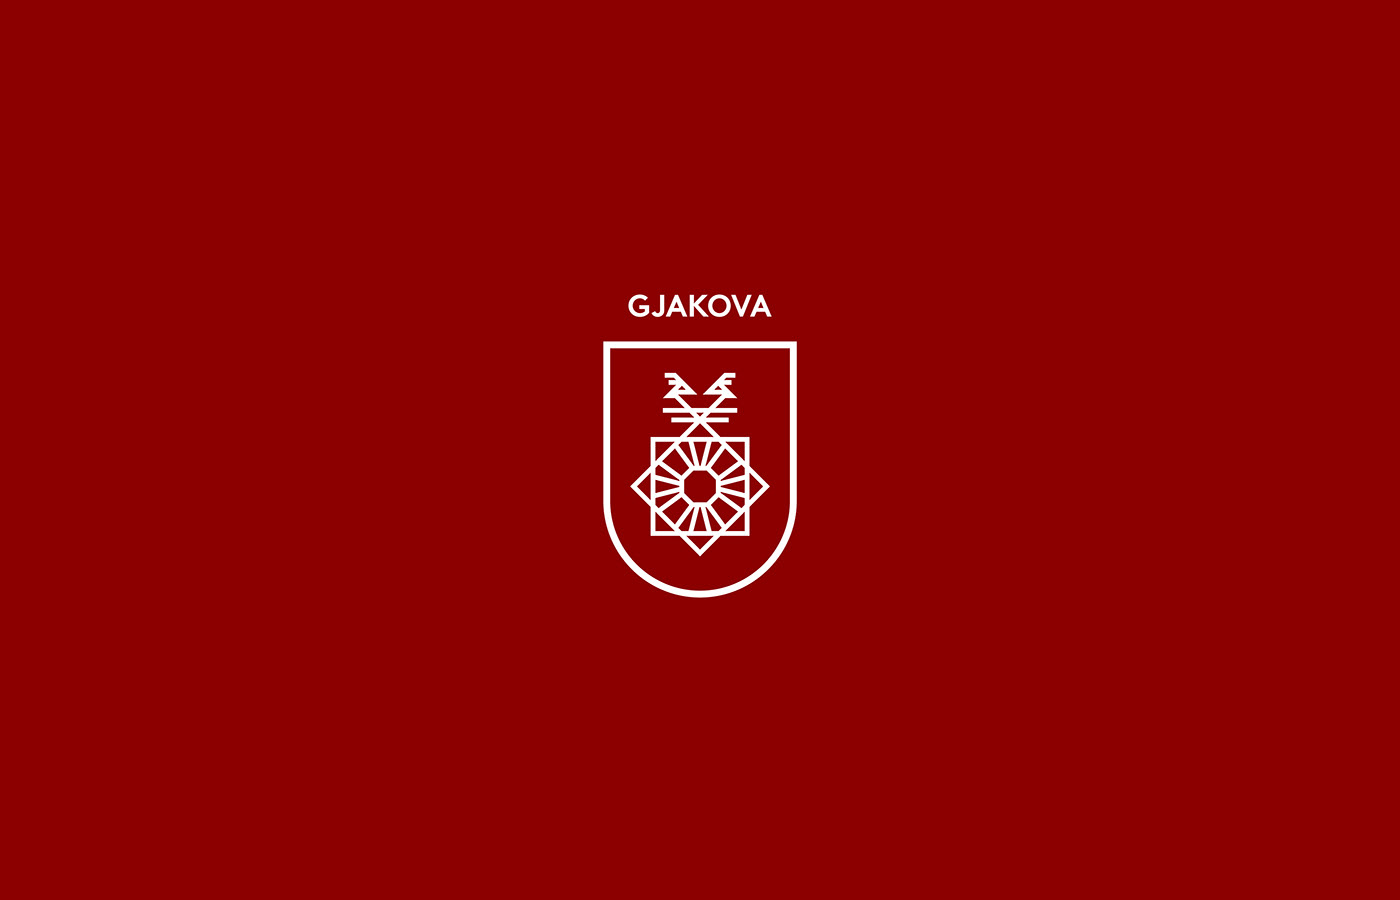 city coat of arms emblem logo symbol